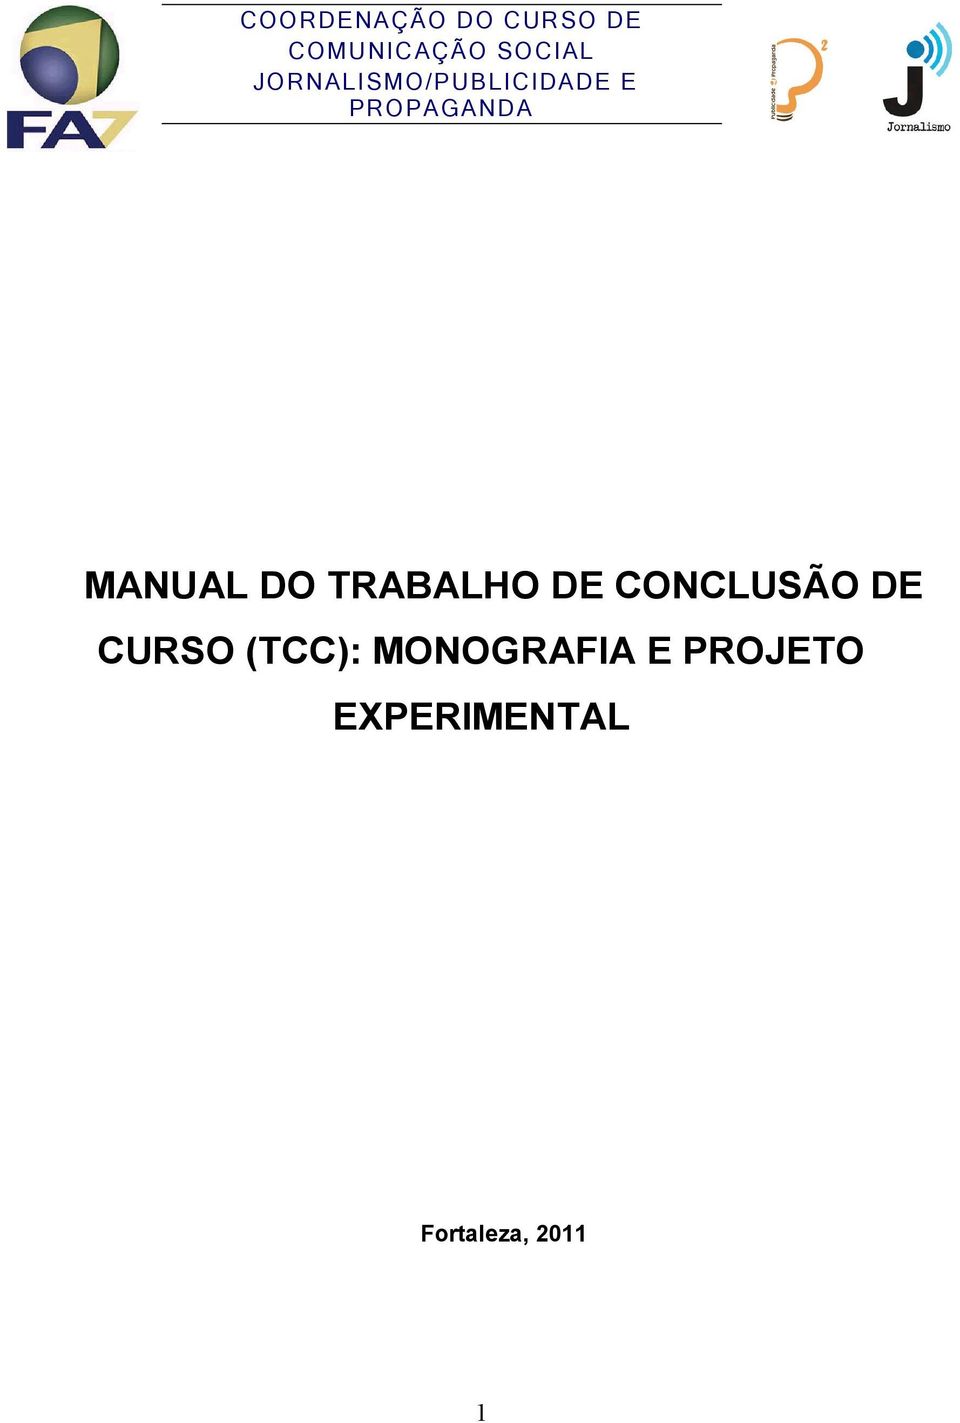 DO TRABALHO DE CONCLUSÃO DE CURSO (TCC):